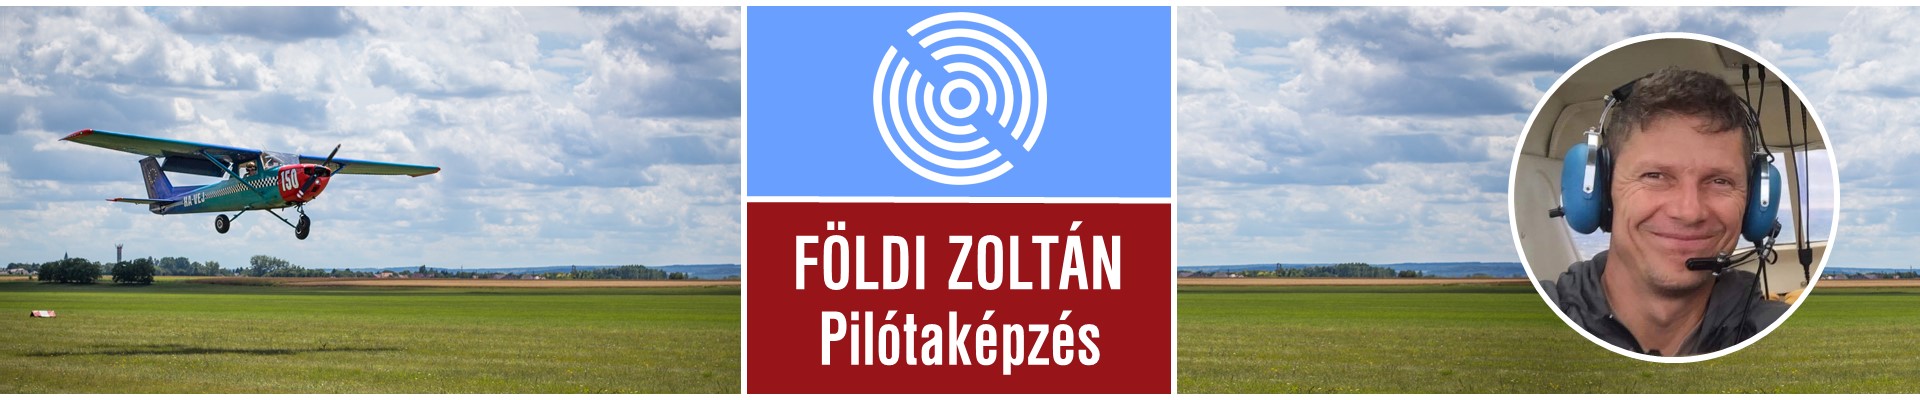 Földi Zoltán - pilotakepzes.eu